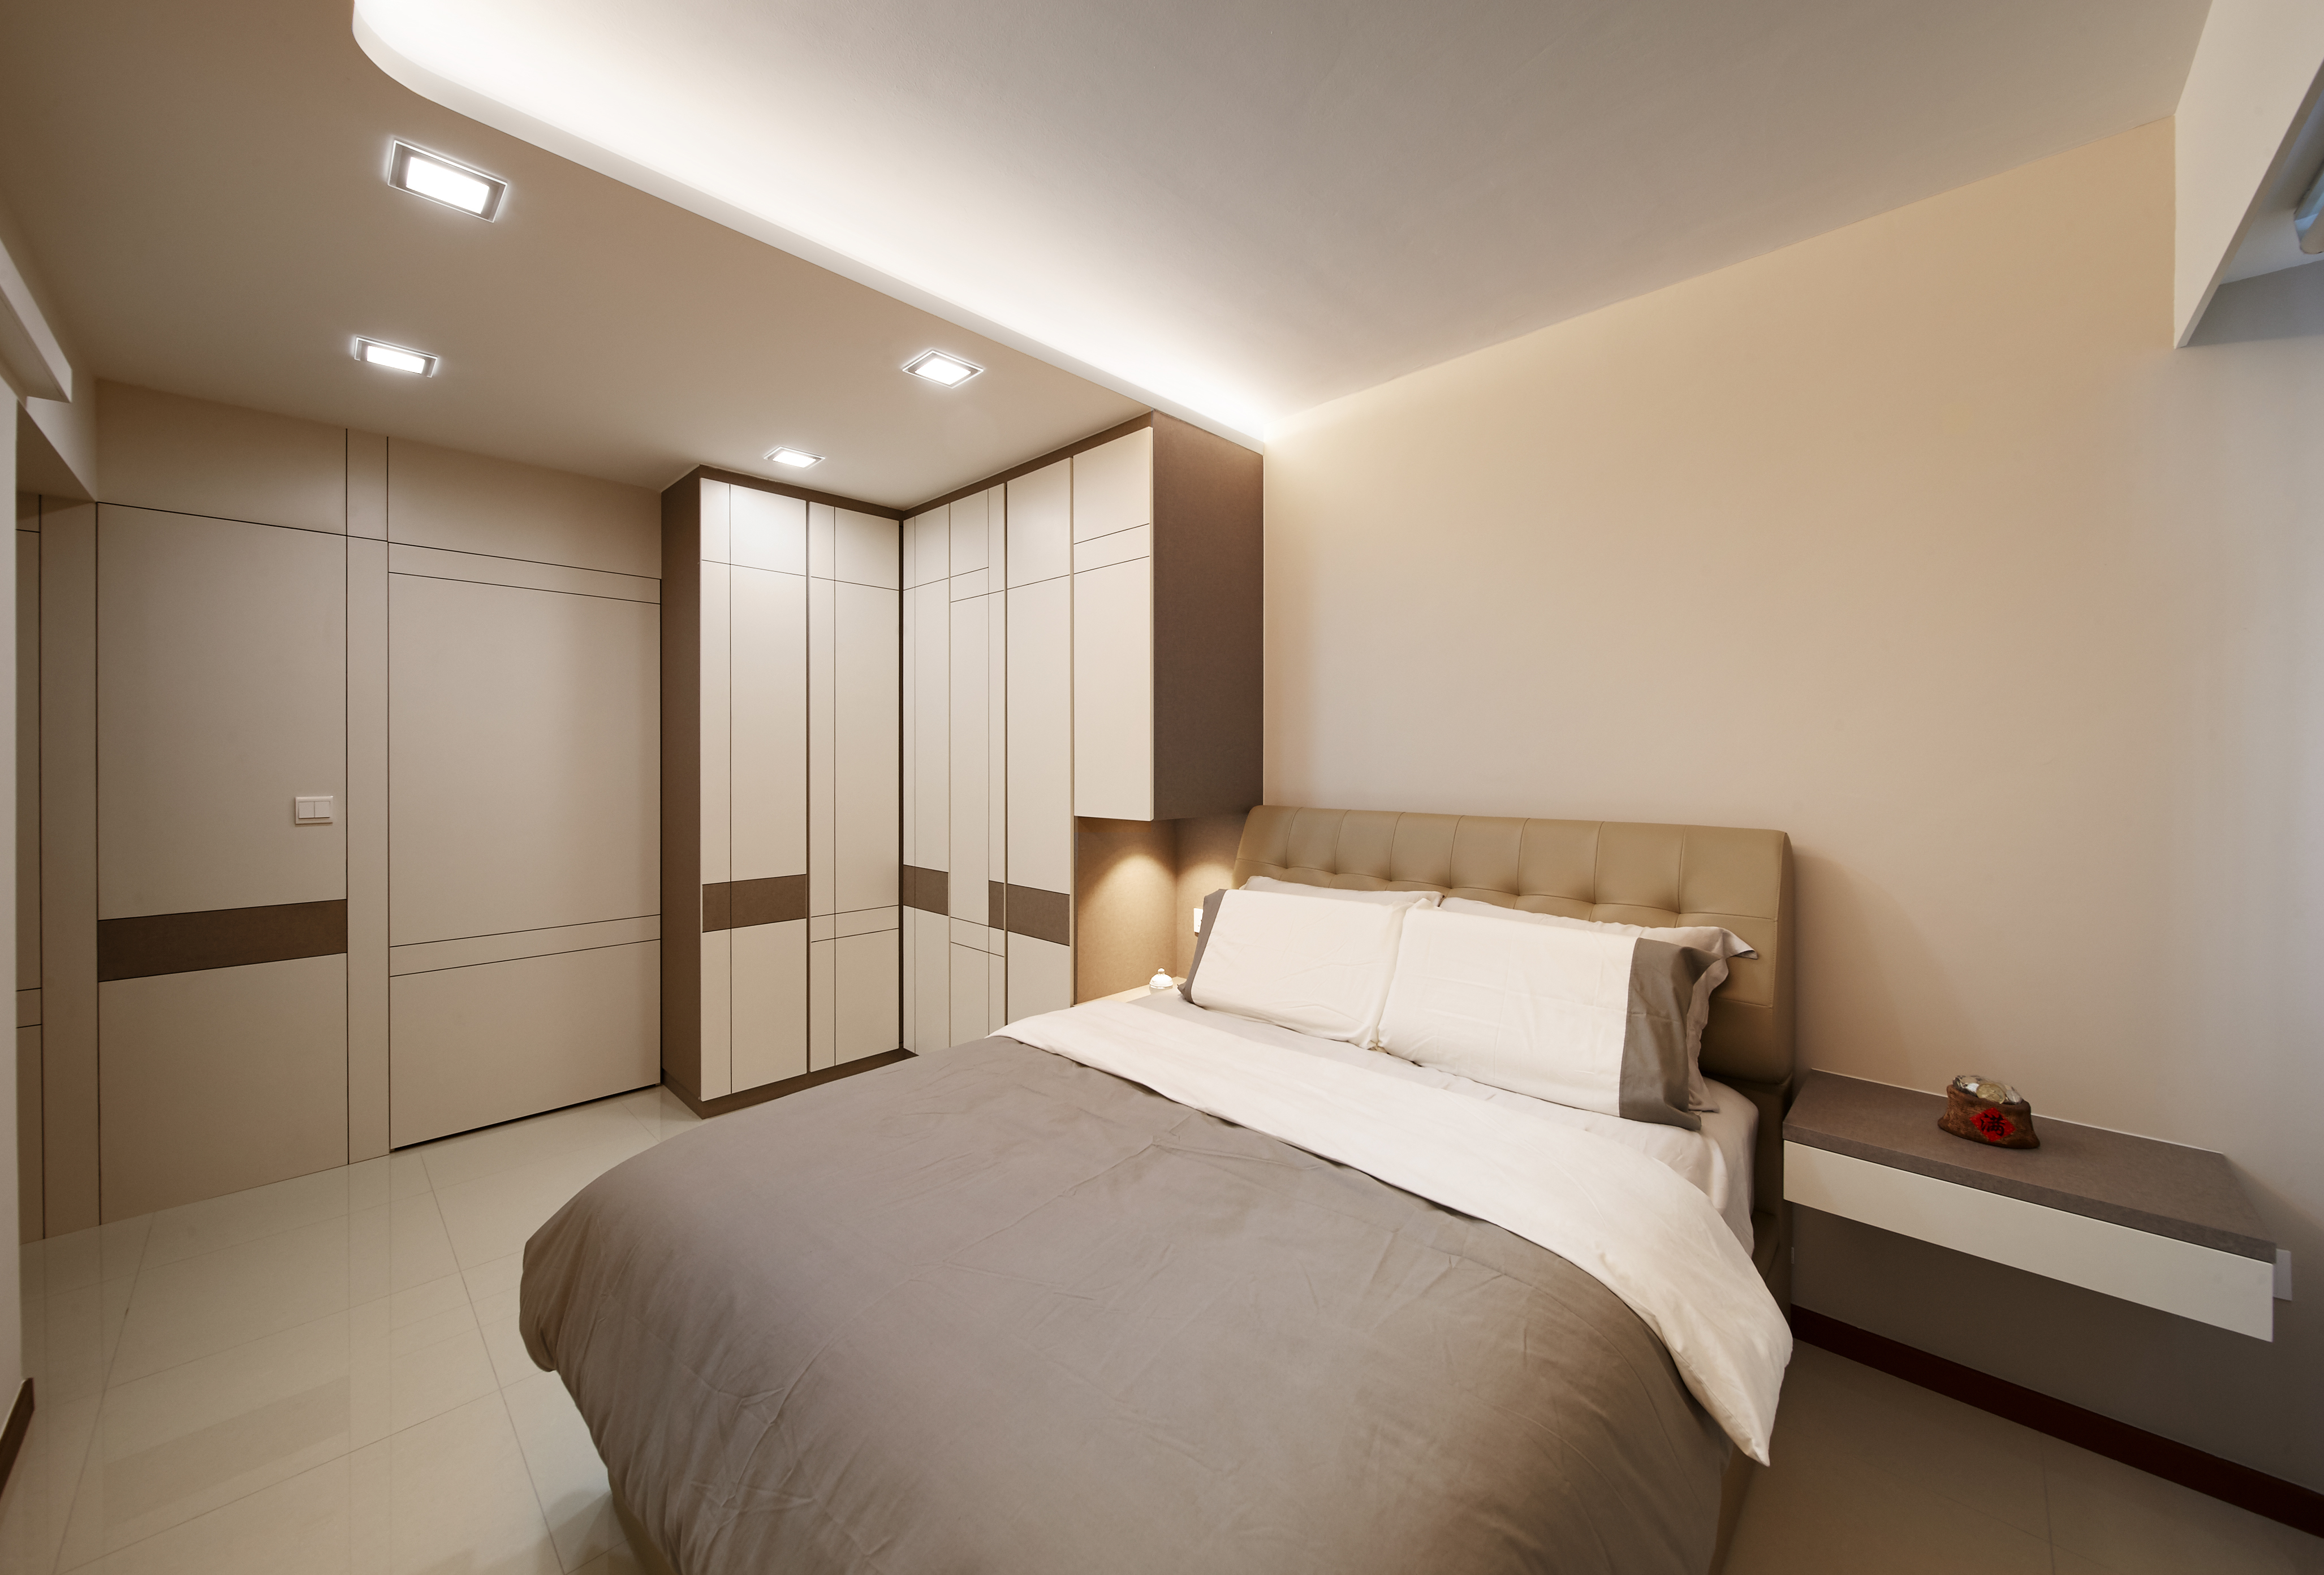 Modern, Others, Scandinavian Design - Bedroom - HDB 4 Room - Design by DC Vision Design Pte Ltd